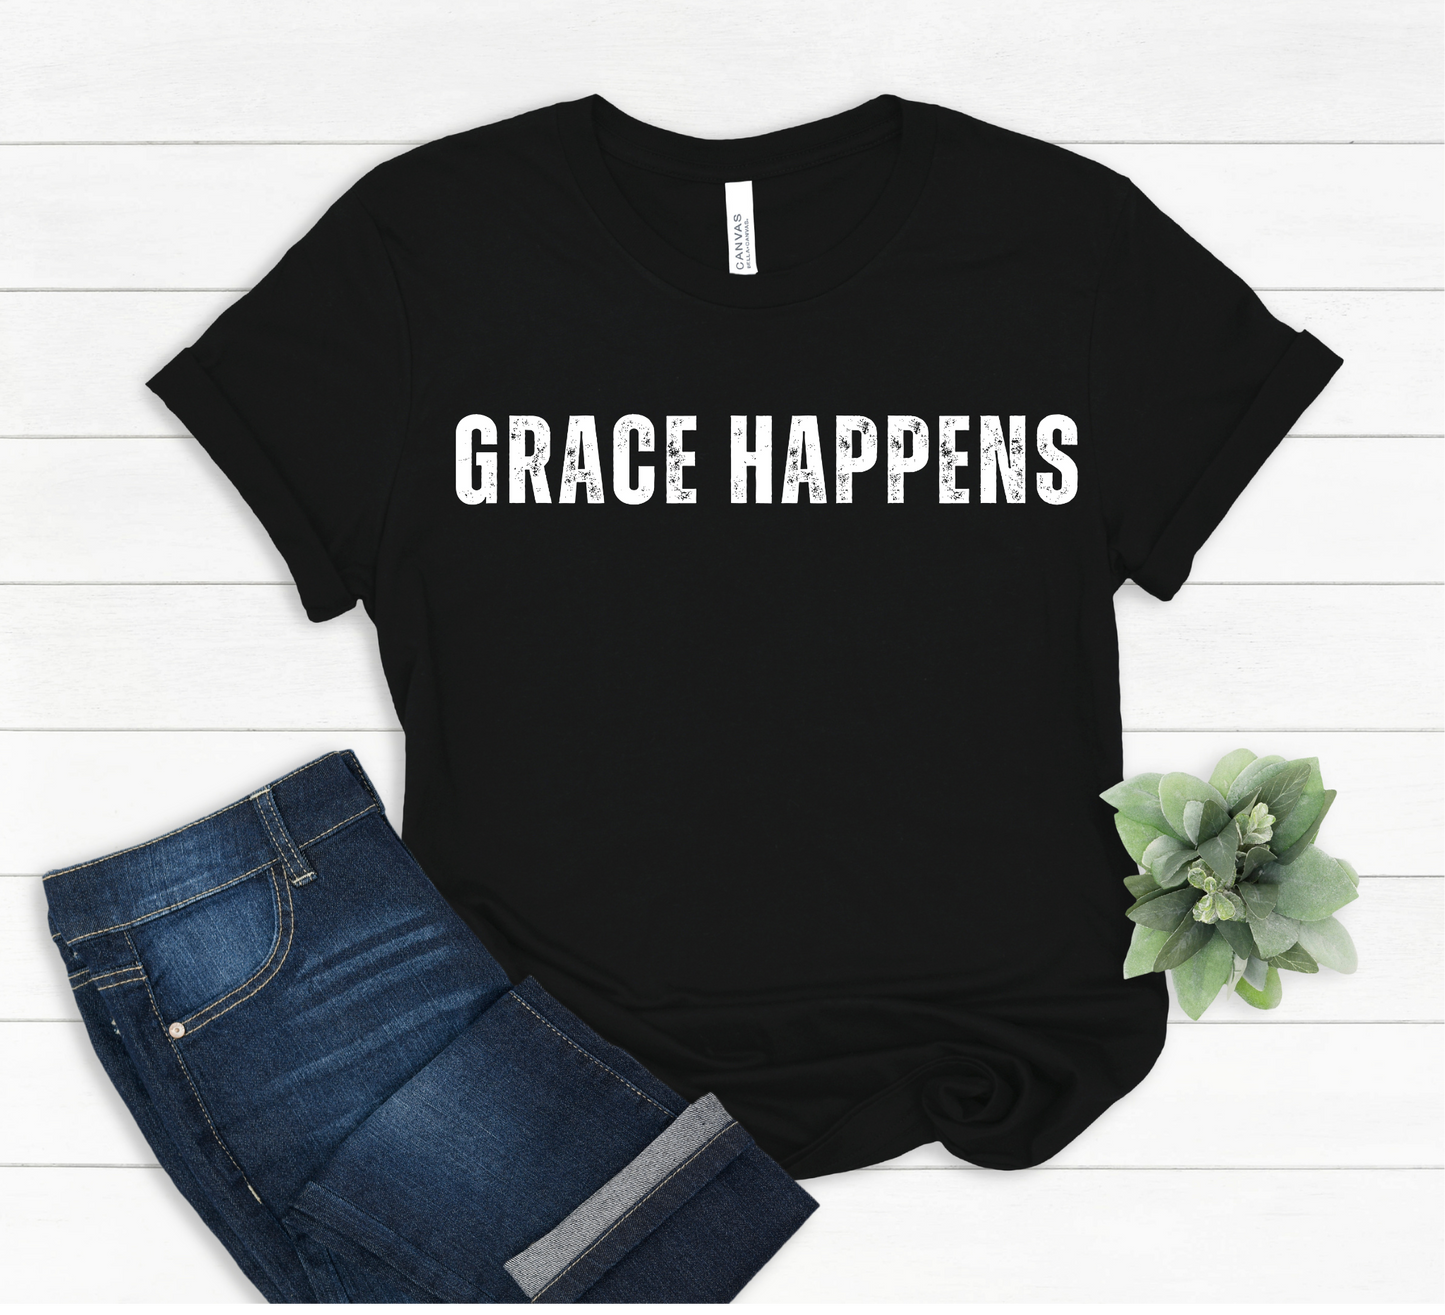 Grace Happens T-Shirt - Halleluiah!